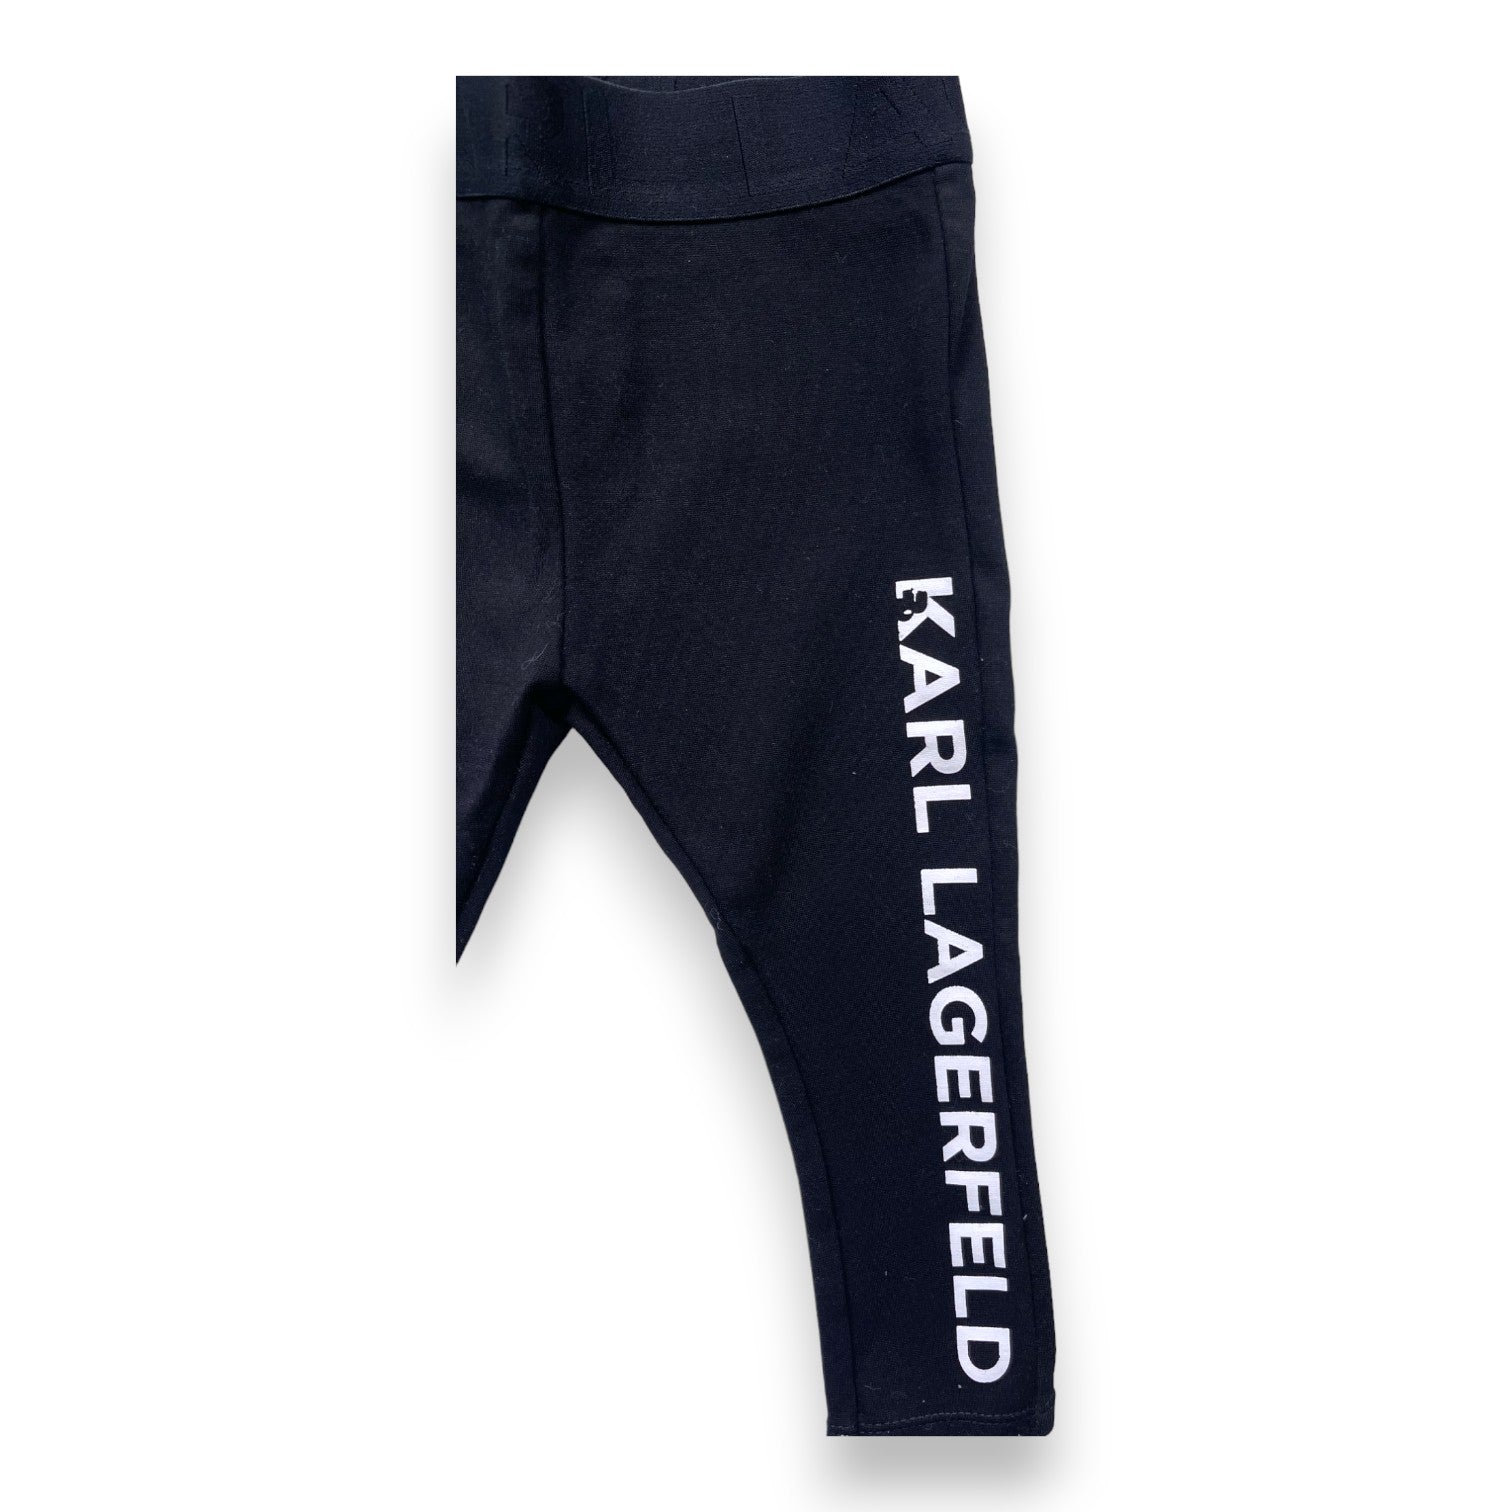 KARL LAGERFELD - Ensemble t shirt et legging noirs à motif - 3 ans